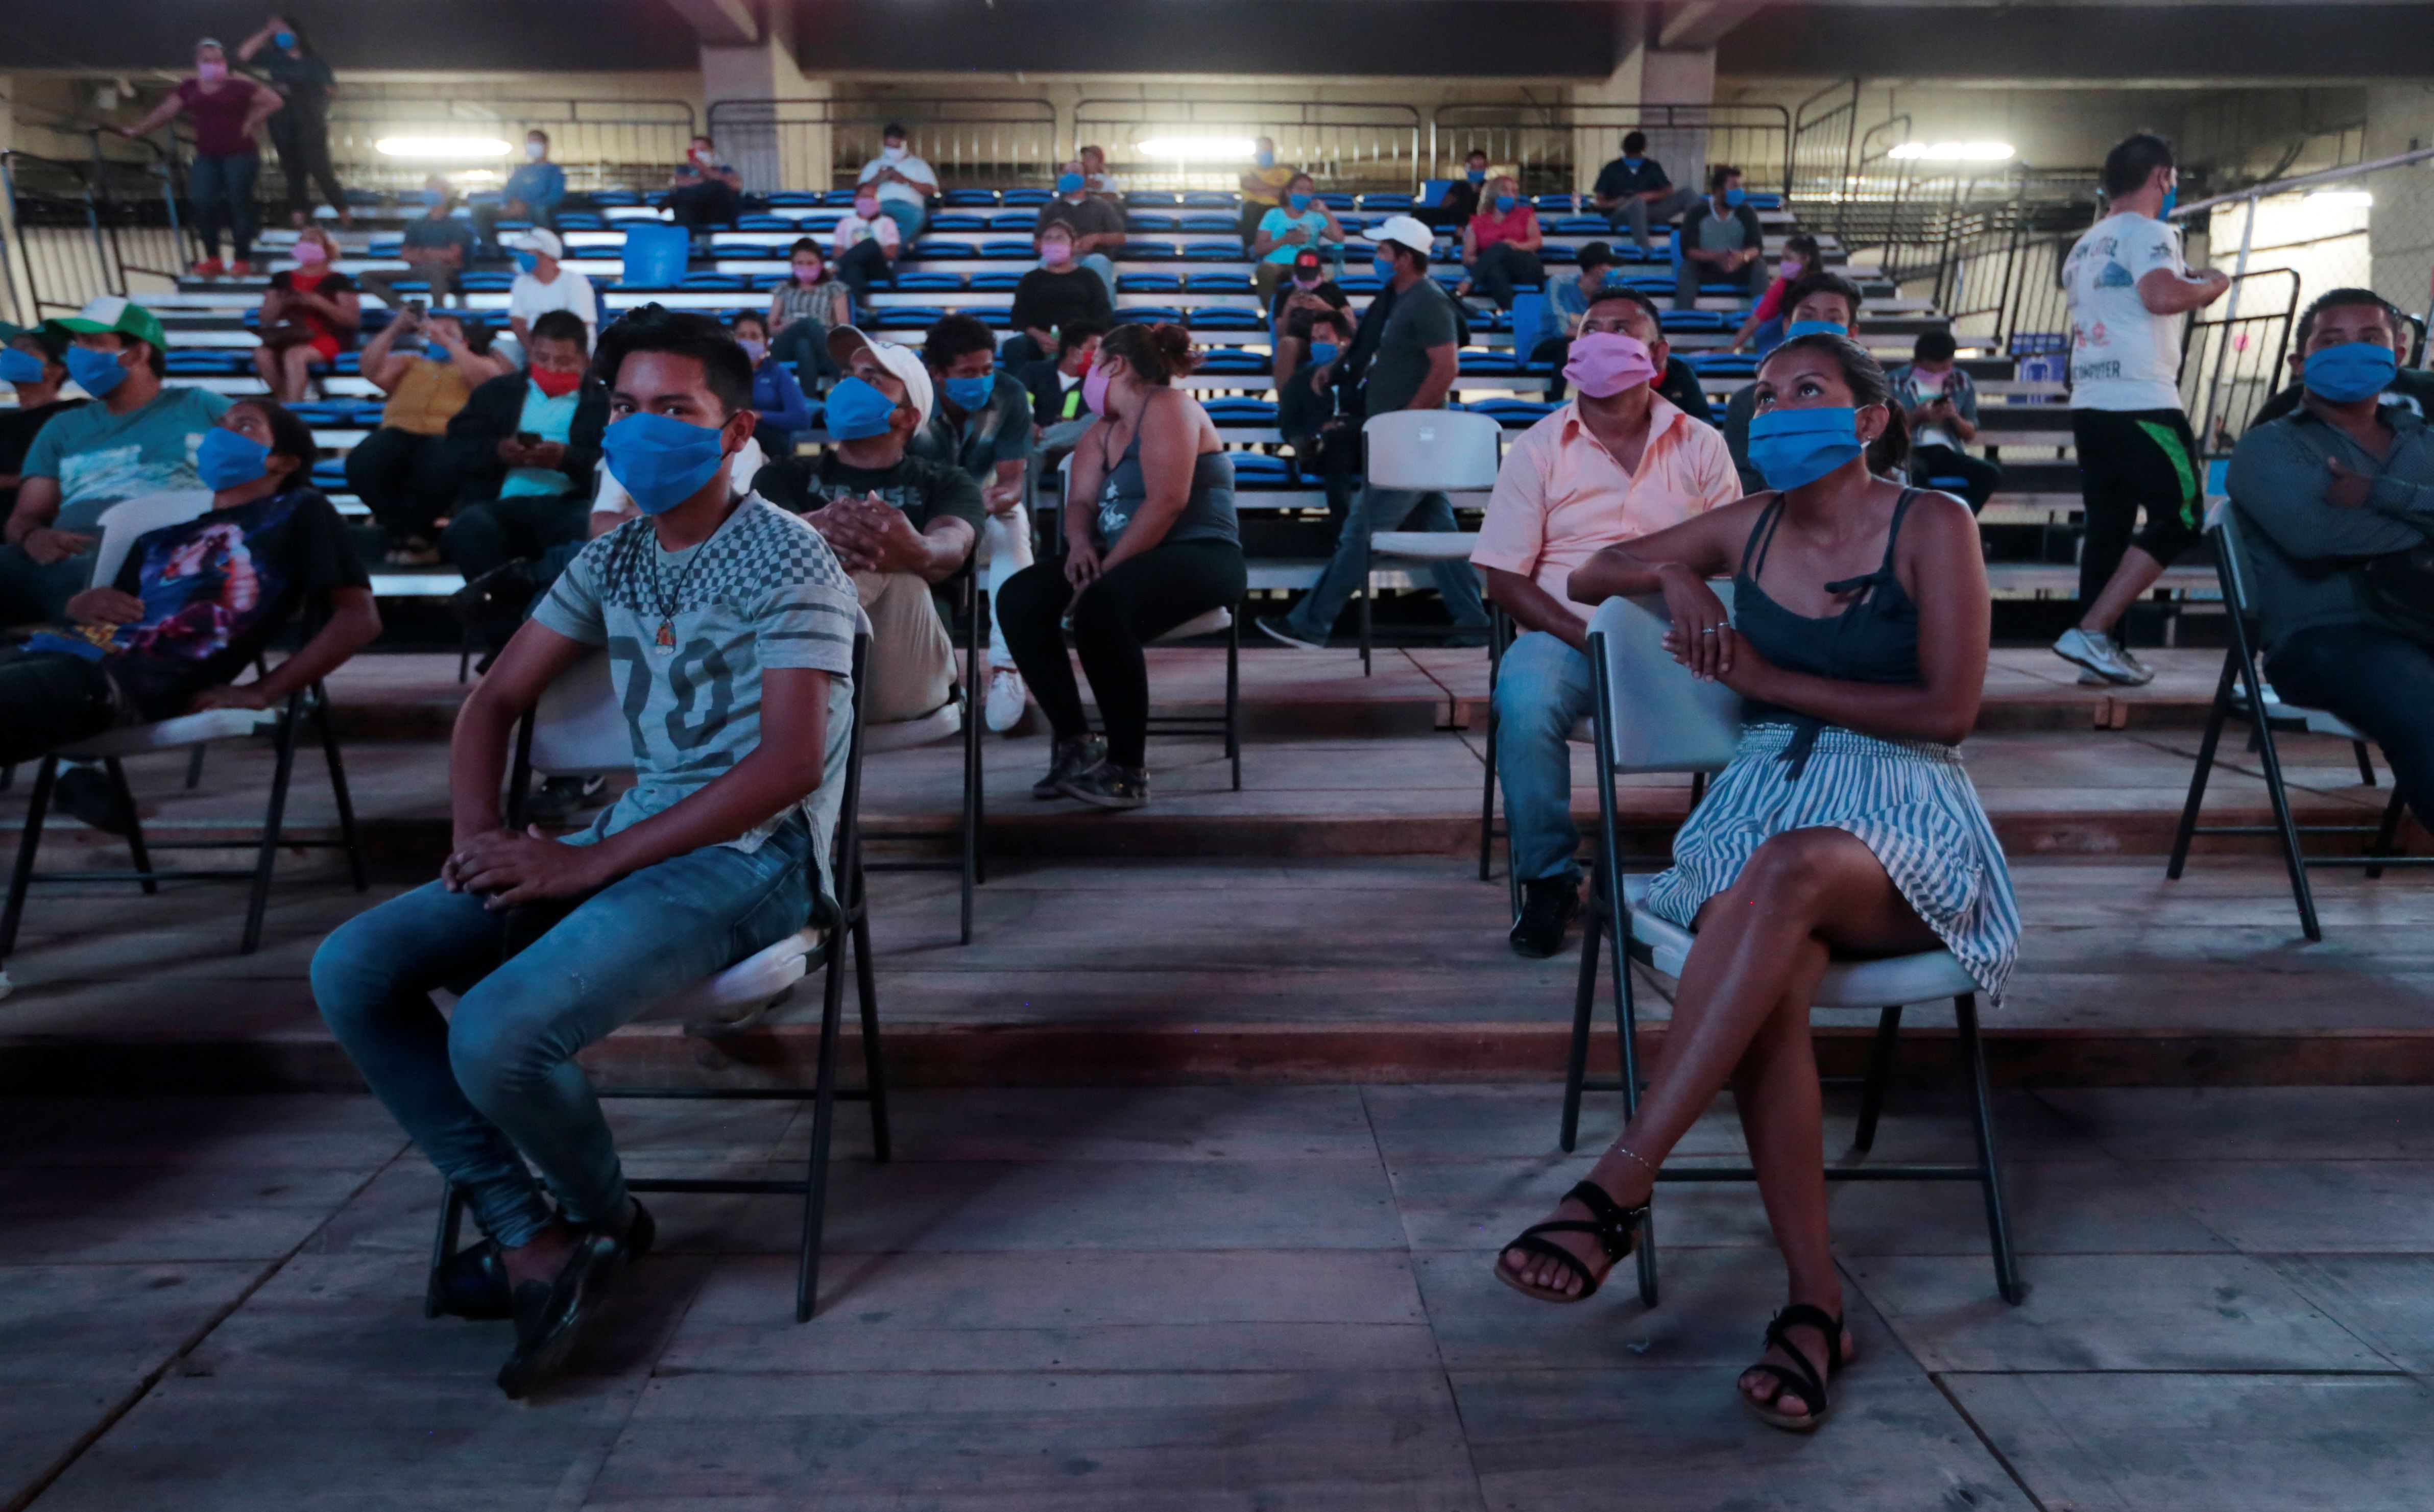 Varias personas asisten a un evento de boxeo en el Polideportivo Alexis Arguello, en Managua, en medio de la pandemia de coronavirus (REUTERS/Oswaldo Rivas)